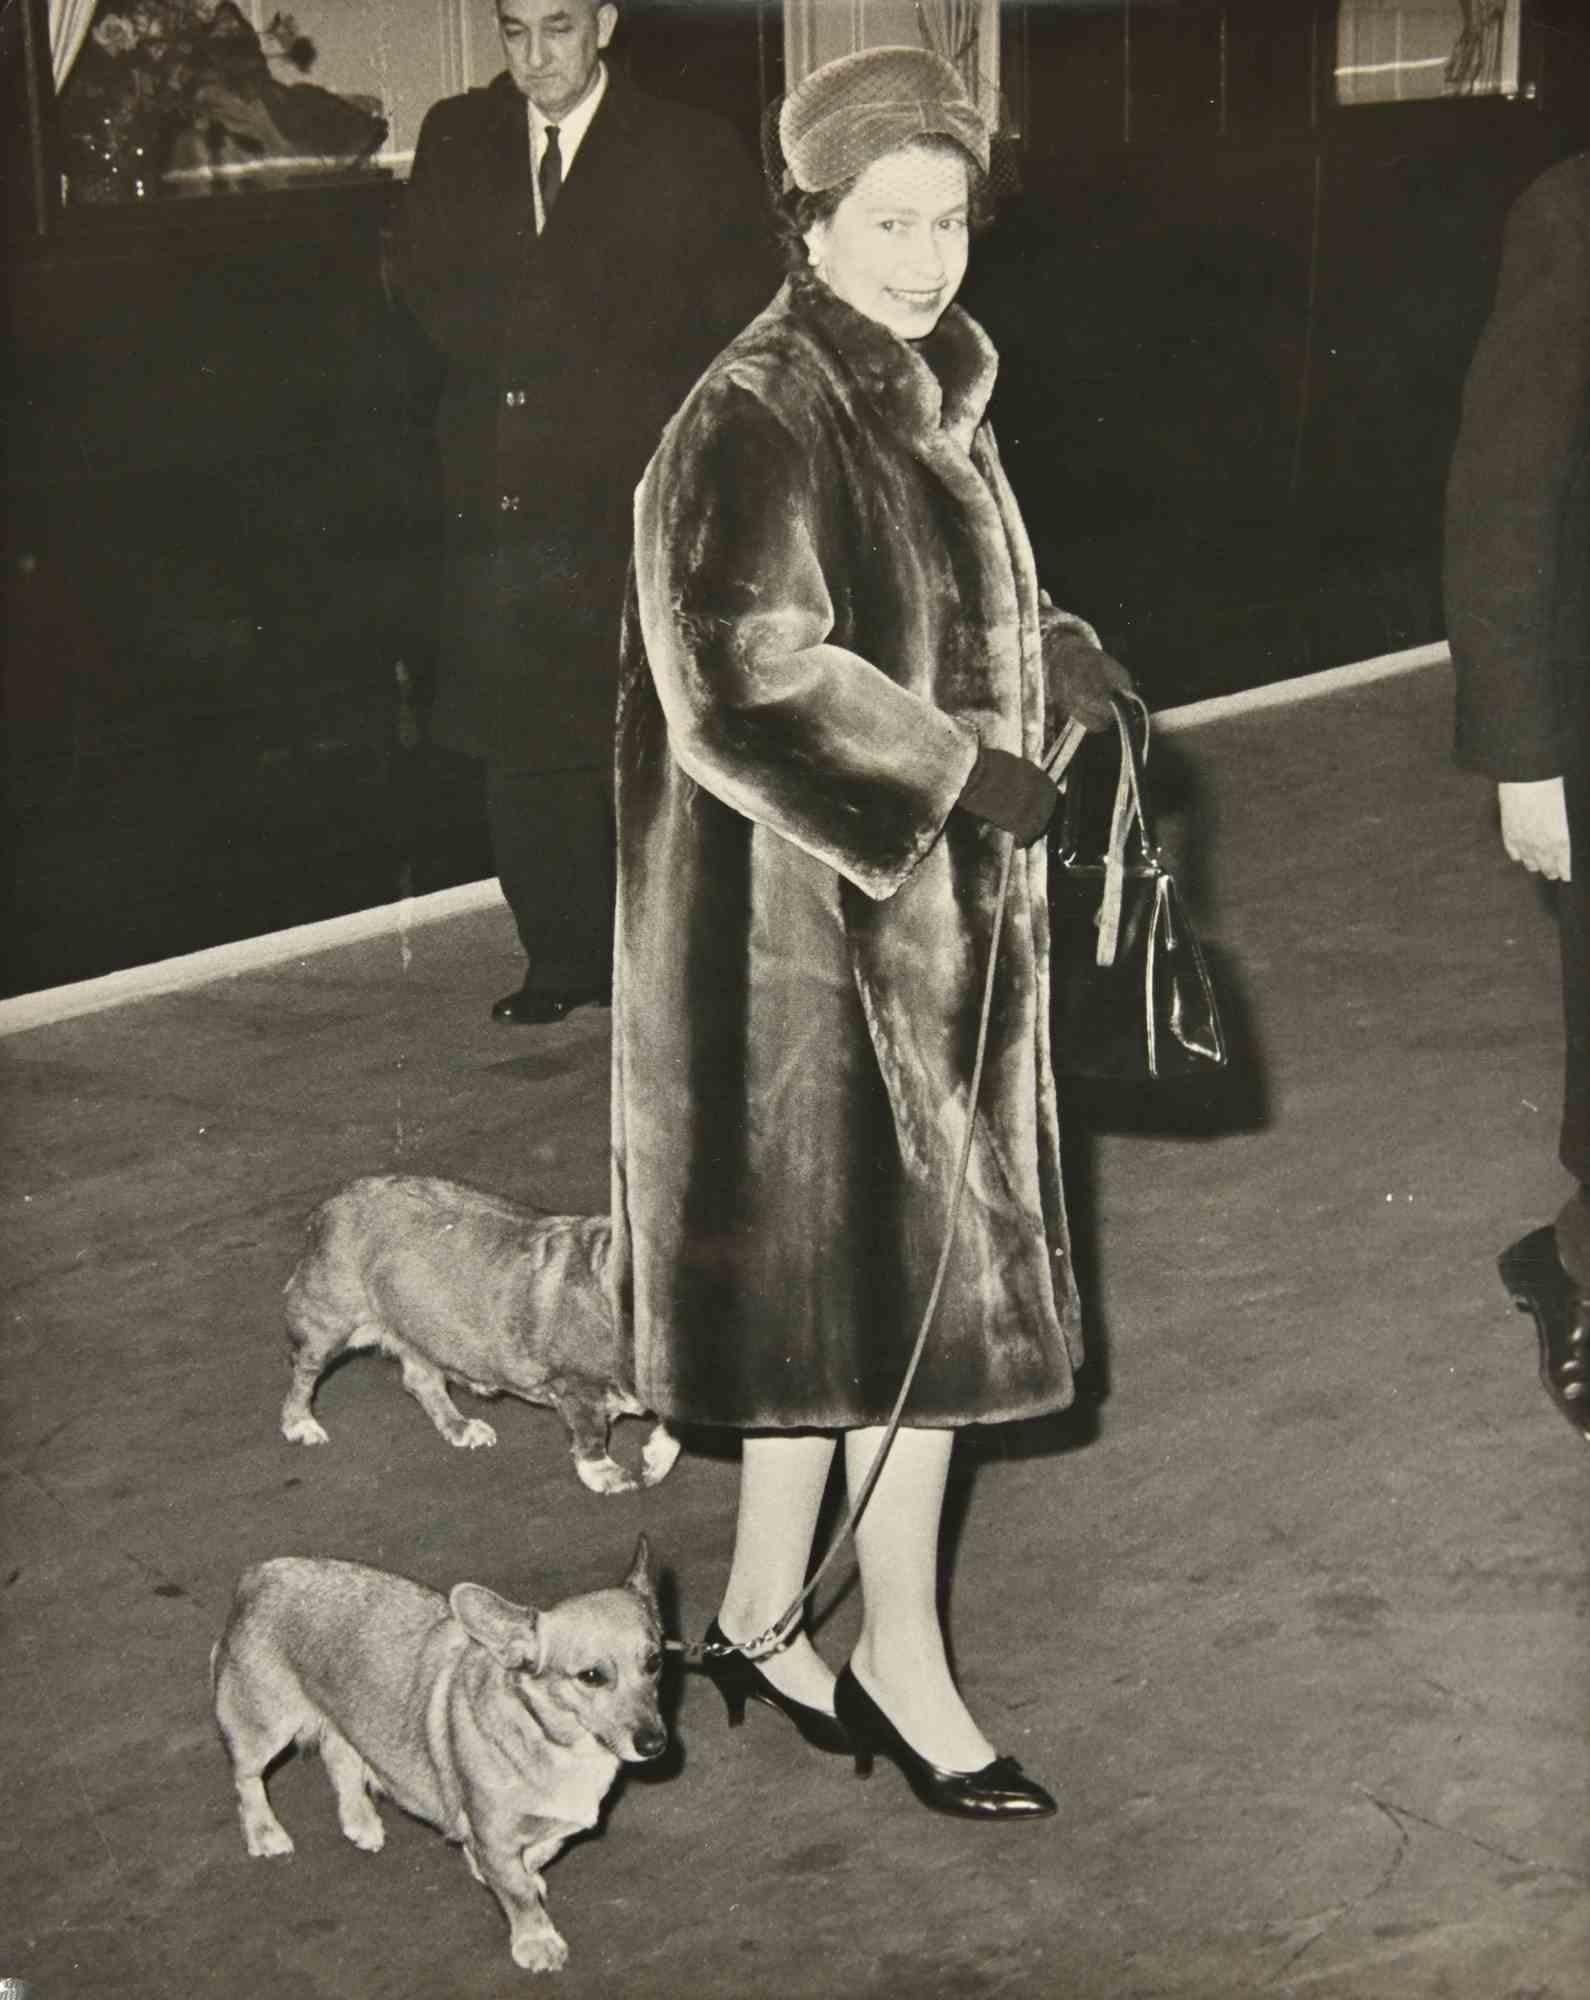 Unknown Portrait Photograph - Queen Elizabeth Back in London - Photograph - 1960s